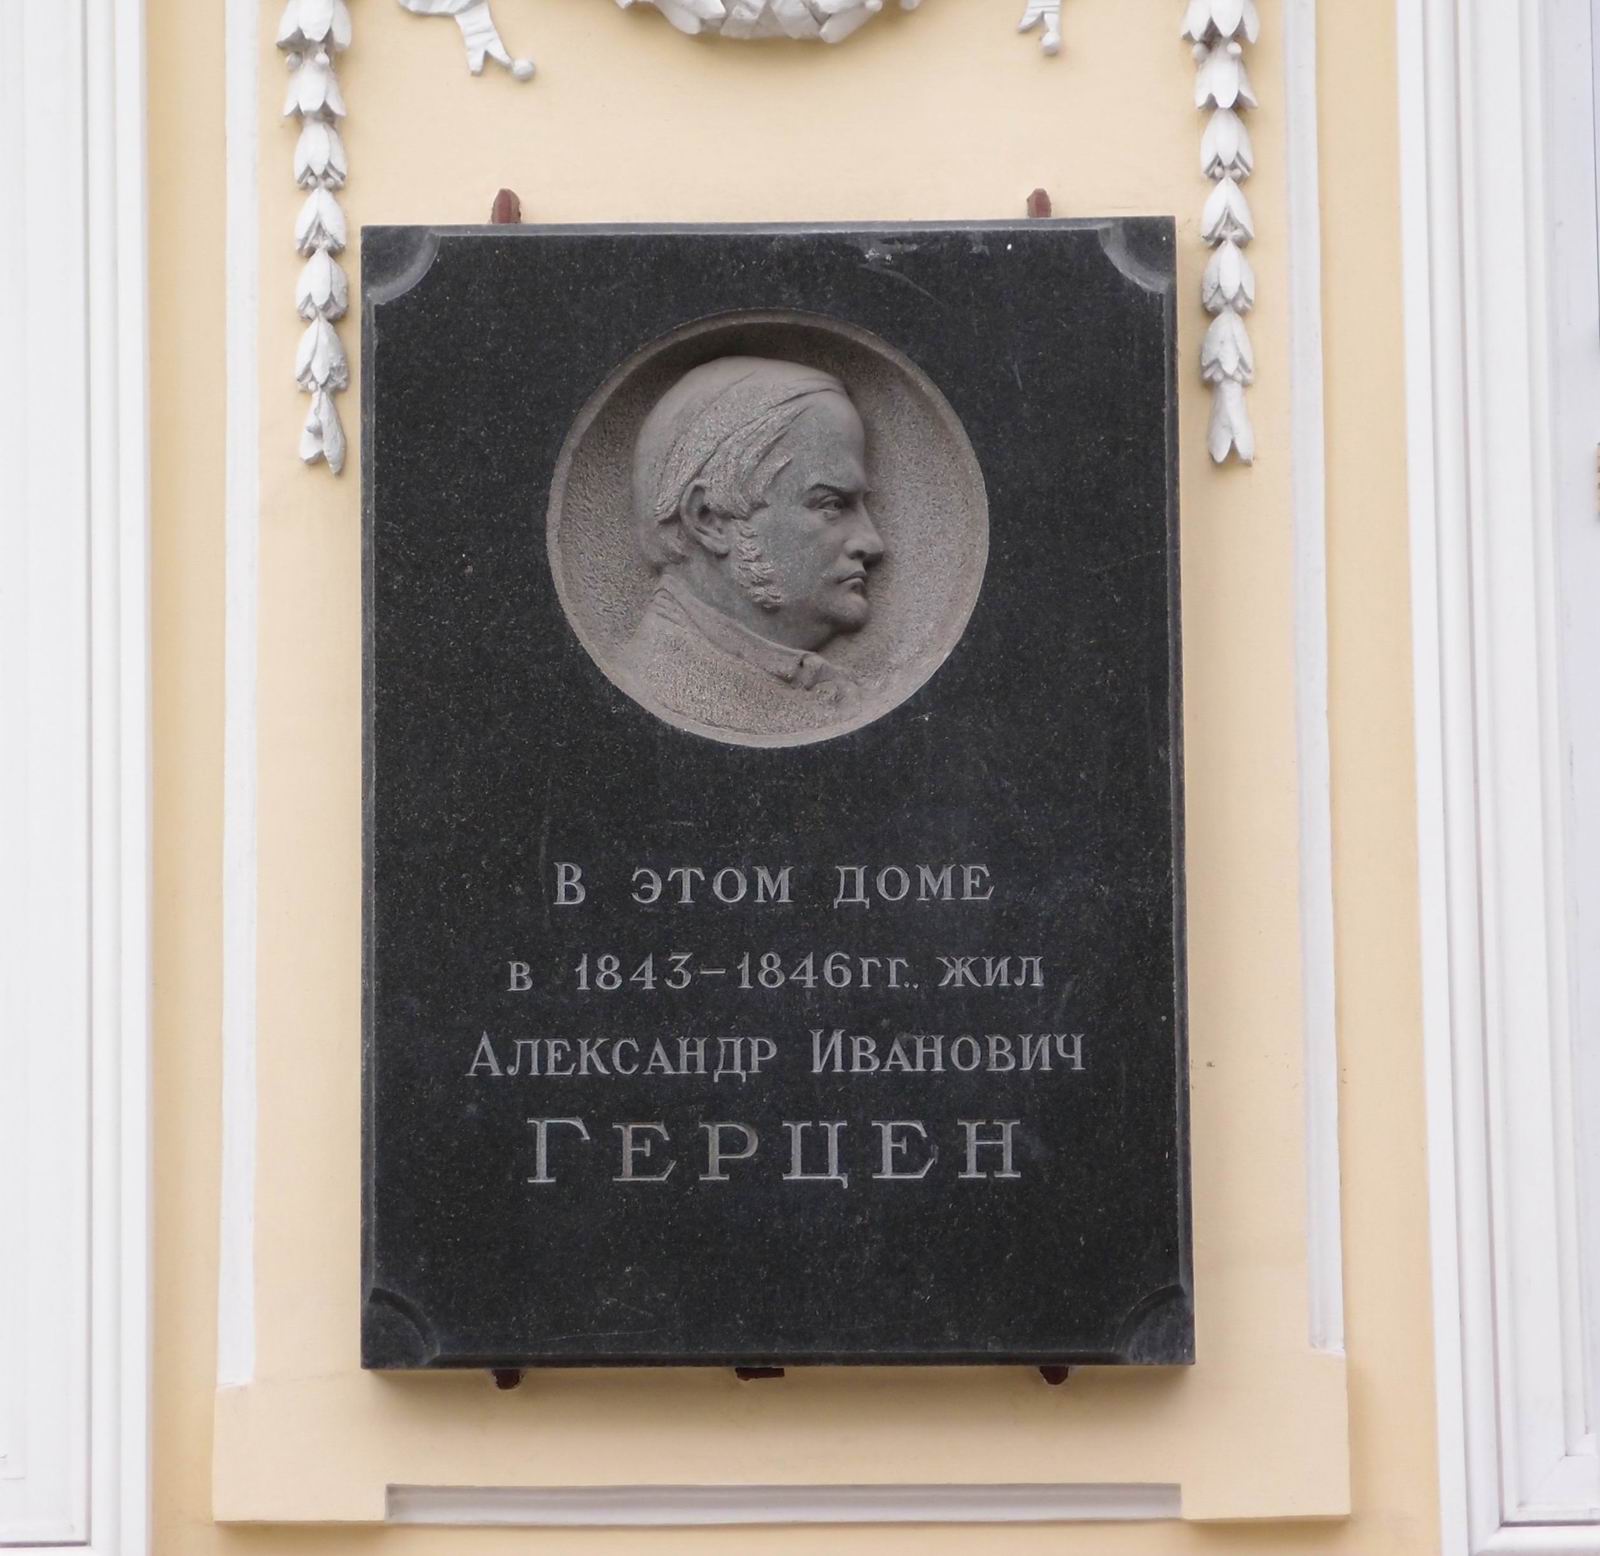 Мемориальная доска Герцену А.И. (1812-1870), ск. П.В.Данилов, на Сивцевом вражке, дом 27, открыта 6.4.1957.